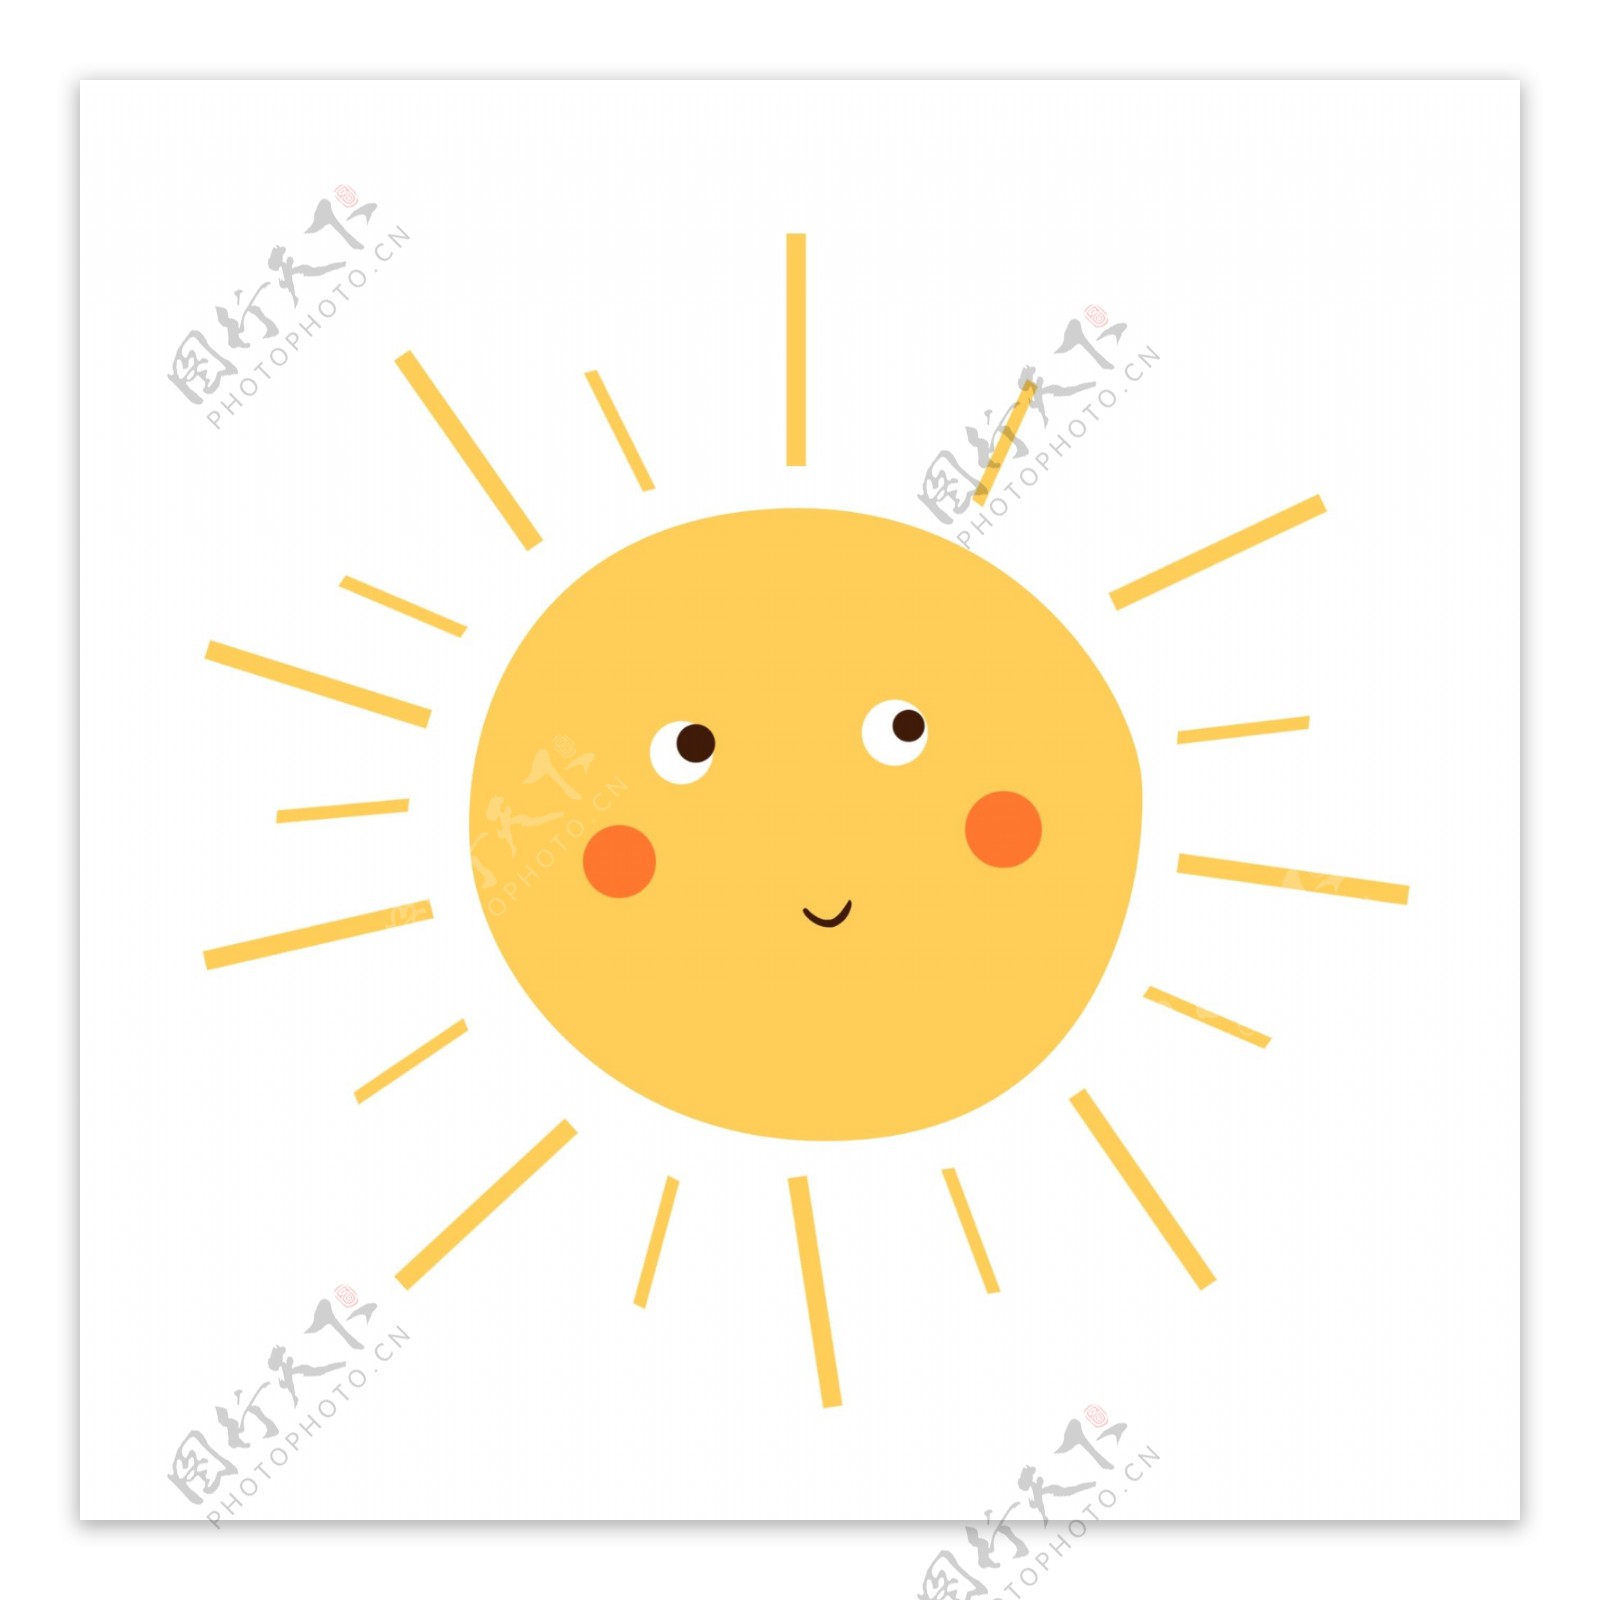 可愛的微笑太陽, 太陽, 微笑, 微笑太陽素材圖案，PSD和PNG圖片免費下載